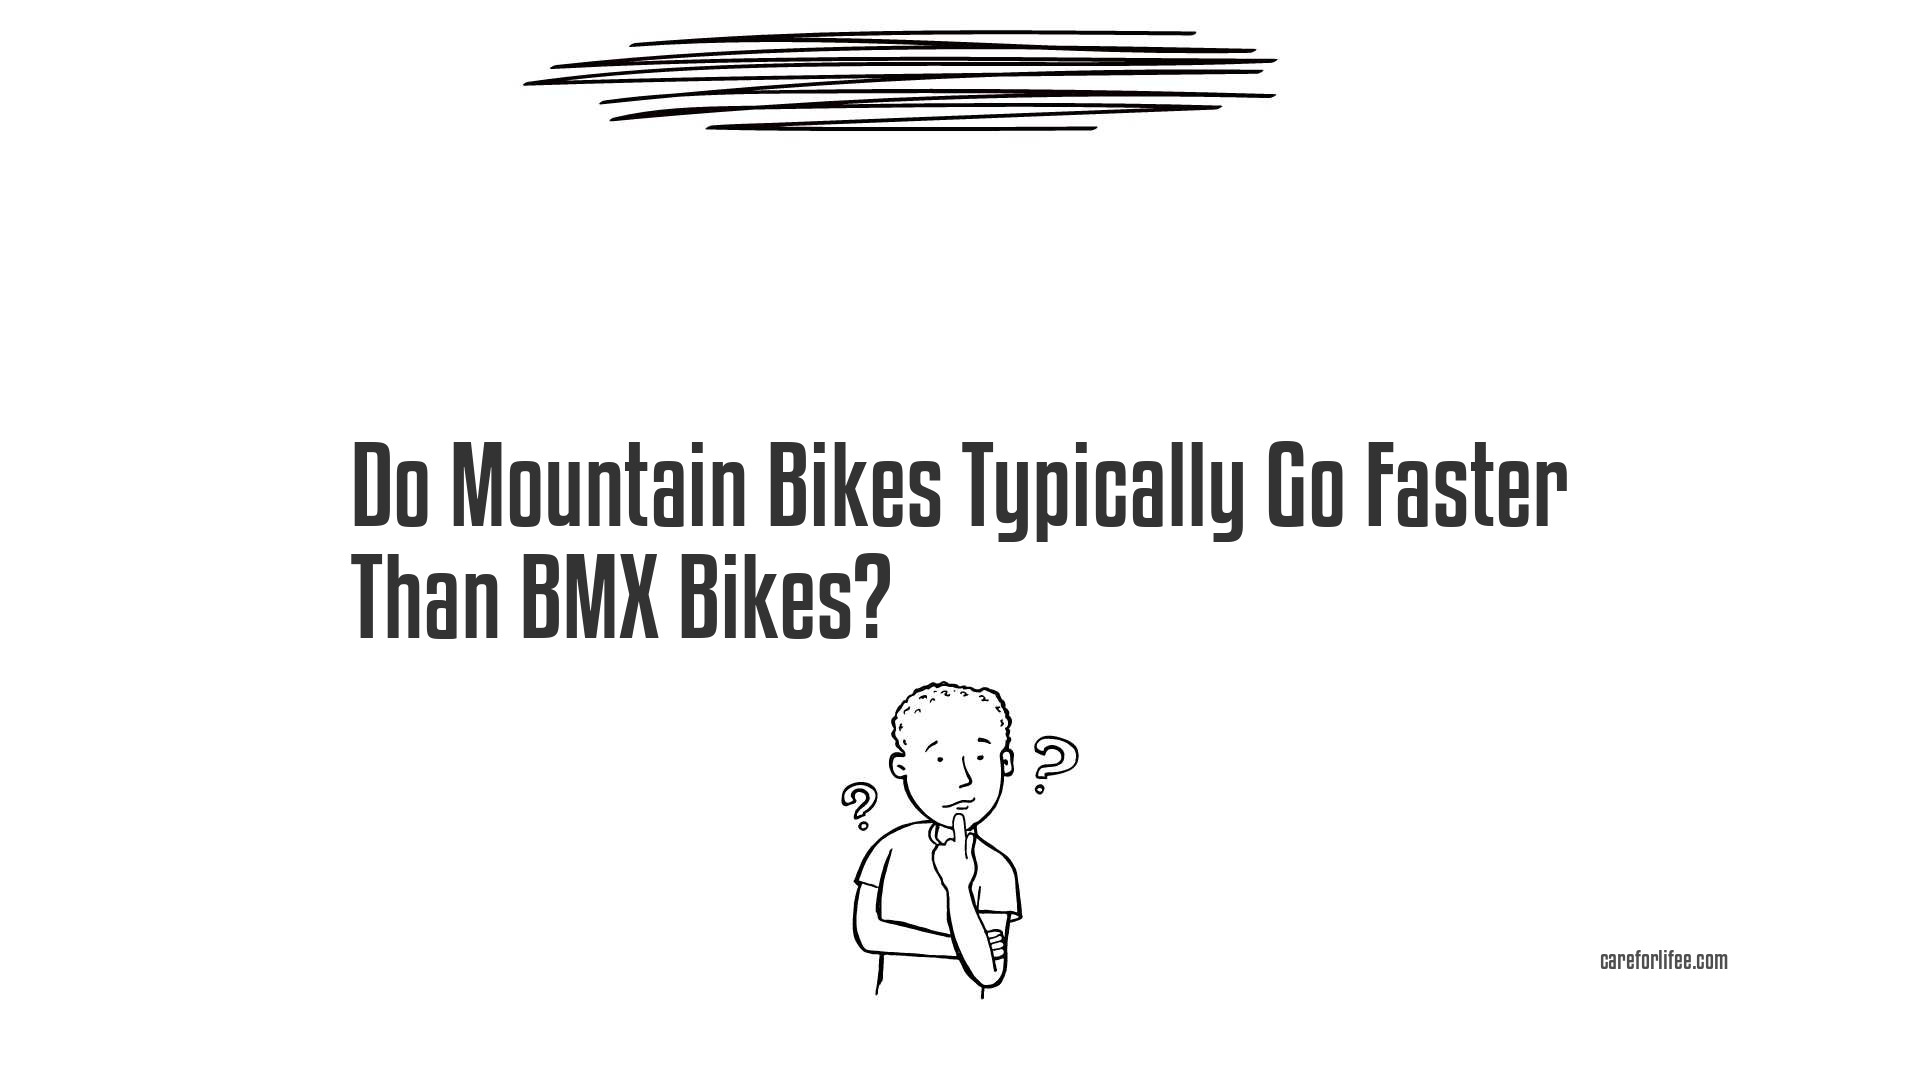 Do Mountain Bikes Typically Go Faster Than BMX Bikes?